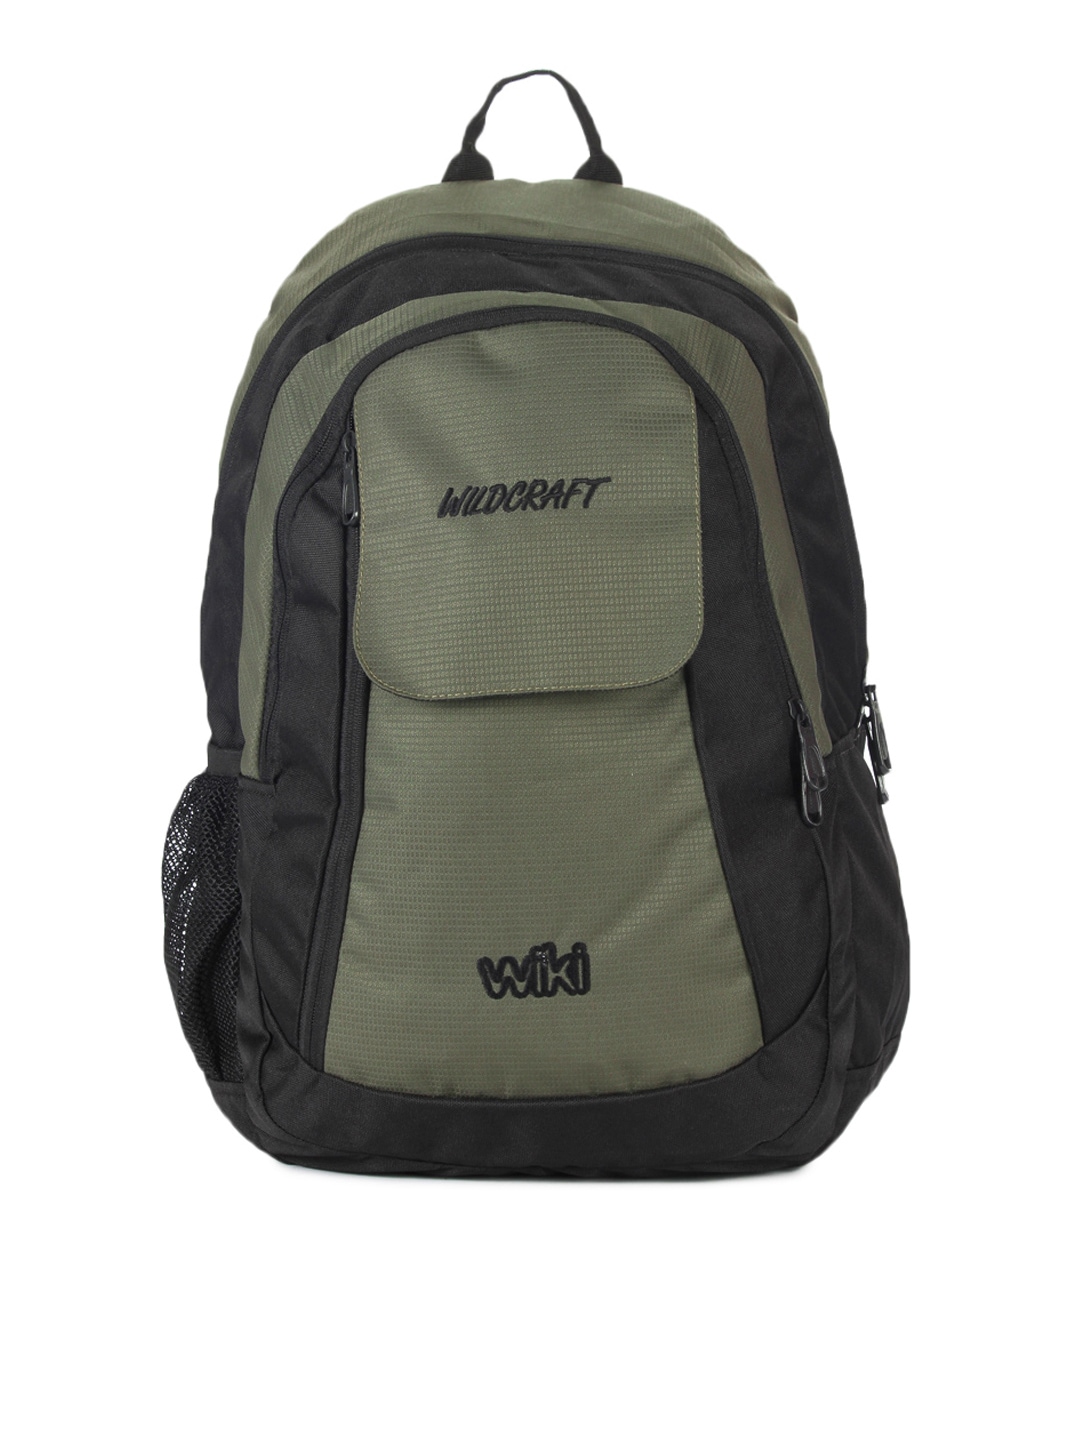 Wildcraft Unisex Olive Green & Black Backpack